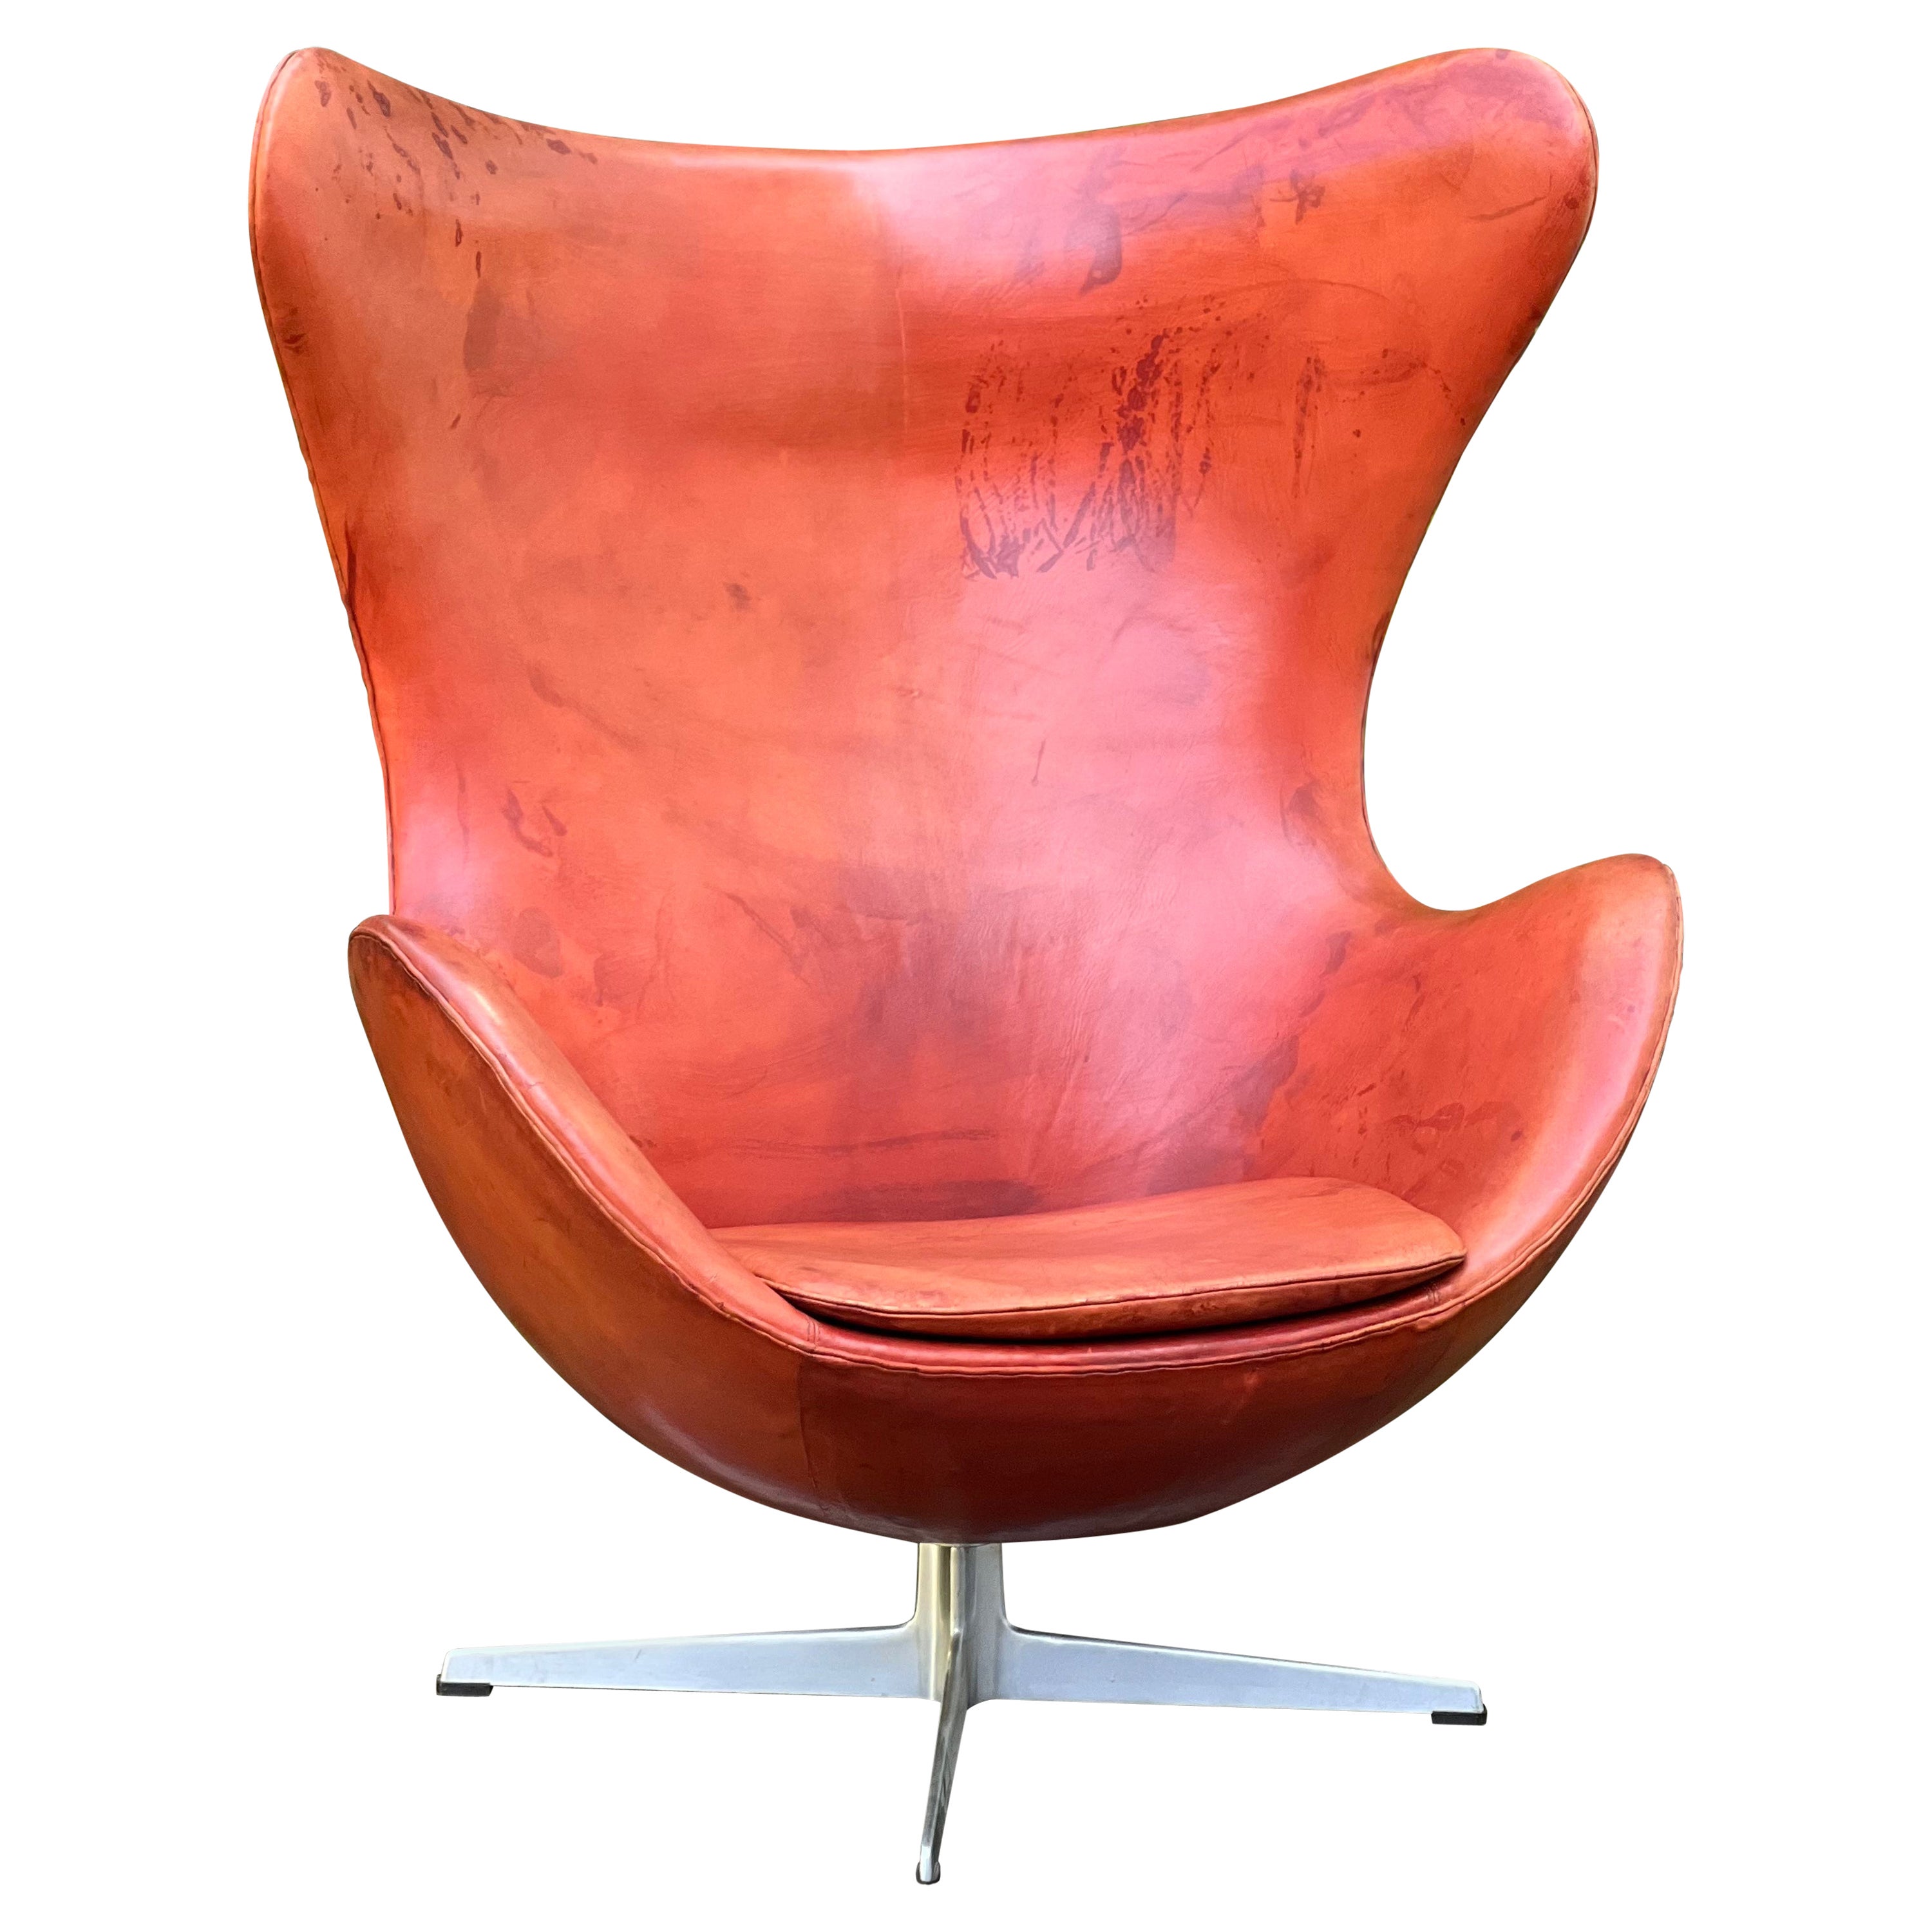 Arne Jacobsen fauteuil œuf emblématique en cuir cognac, début des années 60, Fritz Hansen